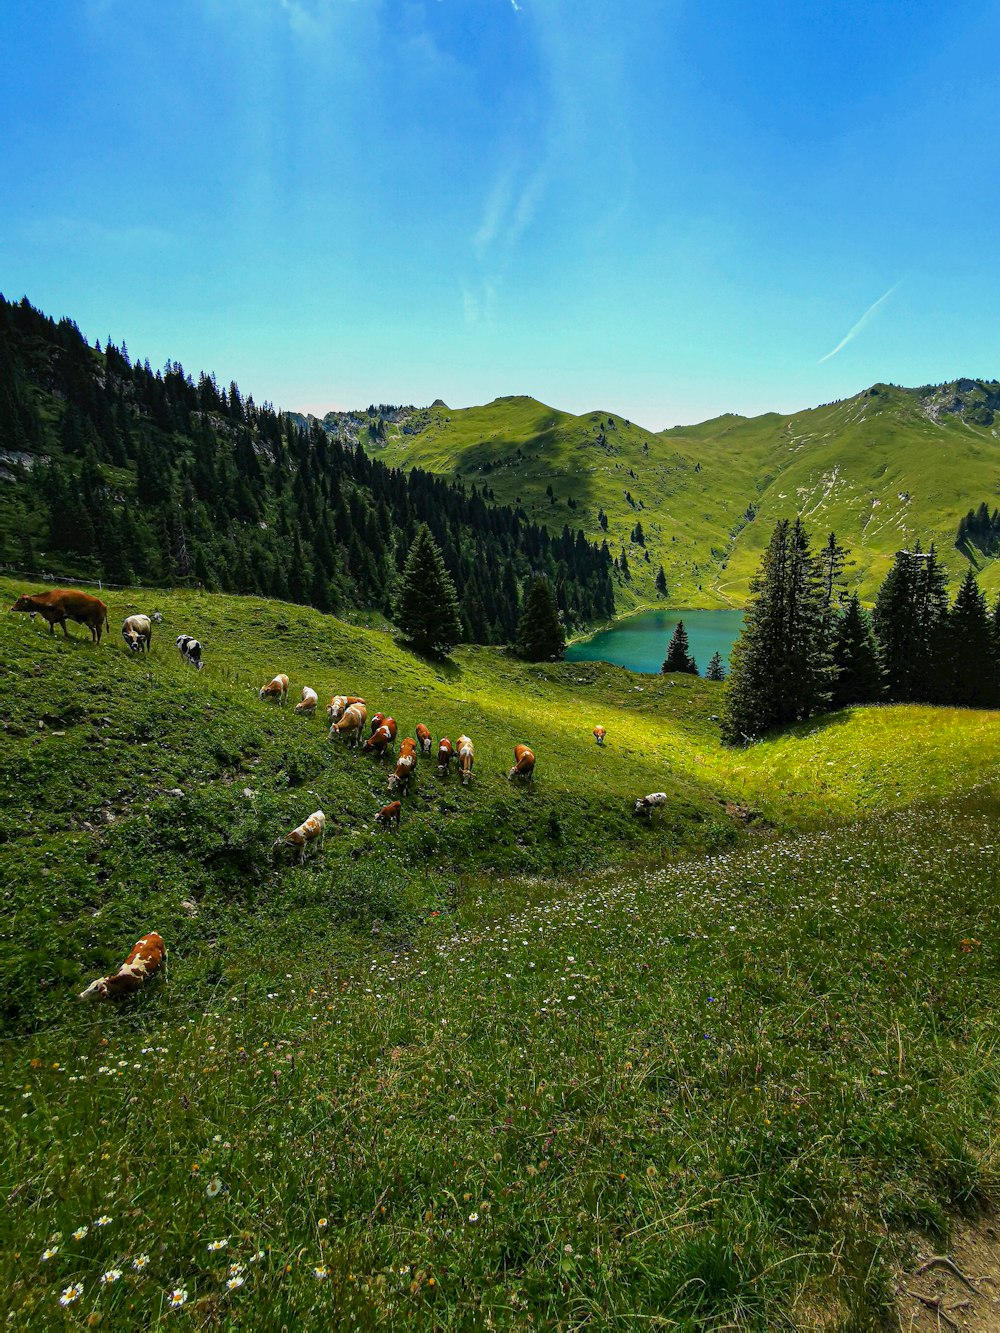 Un grupo de animales pastando en una colina cubierta de hierba